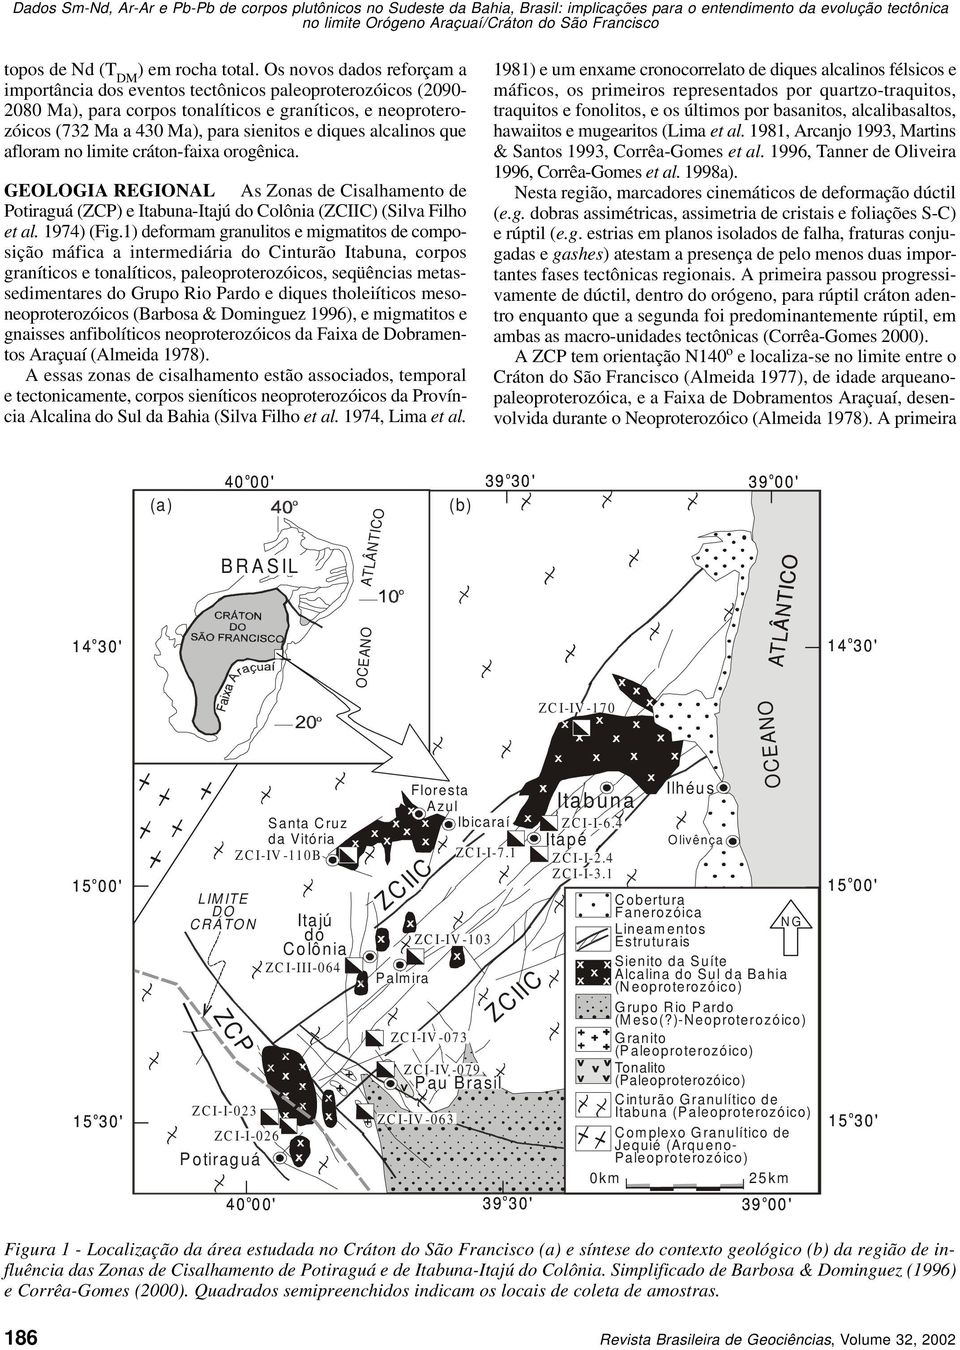 limite crátn-faixa rgênica. GEOLOGIA REGIONAL As Znas de Cisalhament de Ptiraguá (ZCP) e Itabuna-Itajú d Clônia (ZCIIC) (Silva Filh et al. 1974) (Fig.